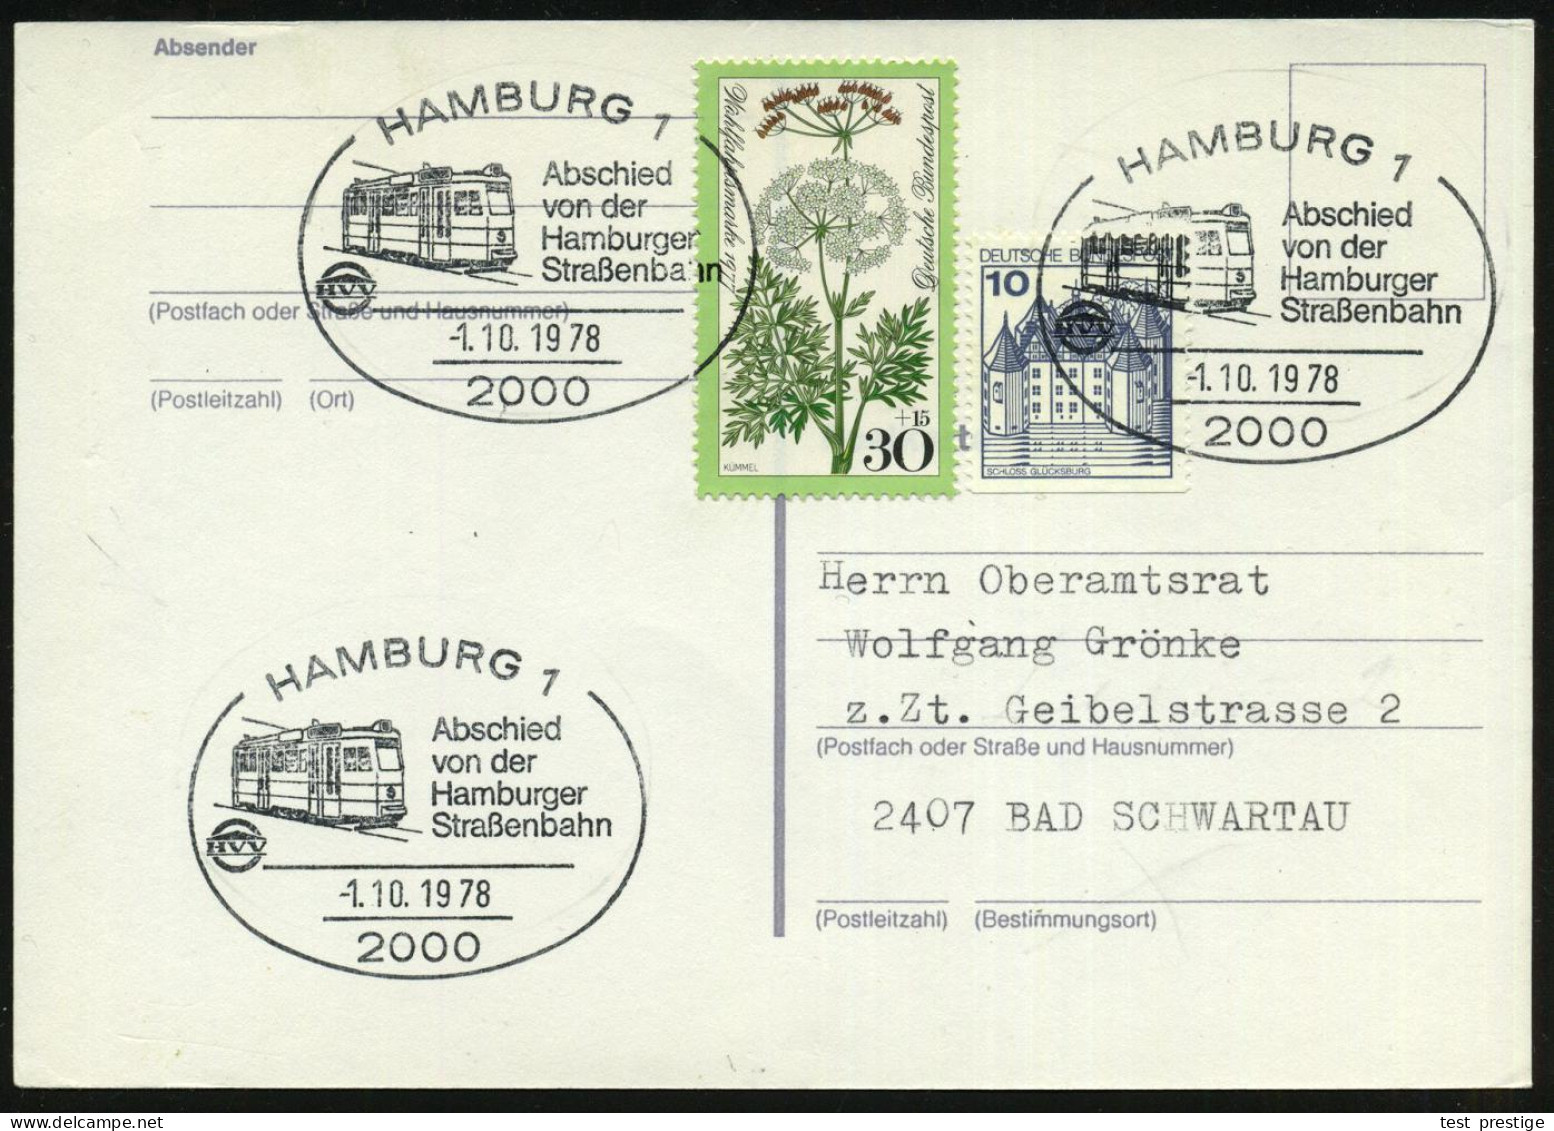 2000 HAMBURG 1/ Abschied/ Von Der/ Hamburger/ Straßenbahn 1978 (1.10.) SSt = Moderne Straßenbahn  3x Klar Auf Inl.-Karte - Tranvías